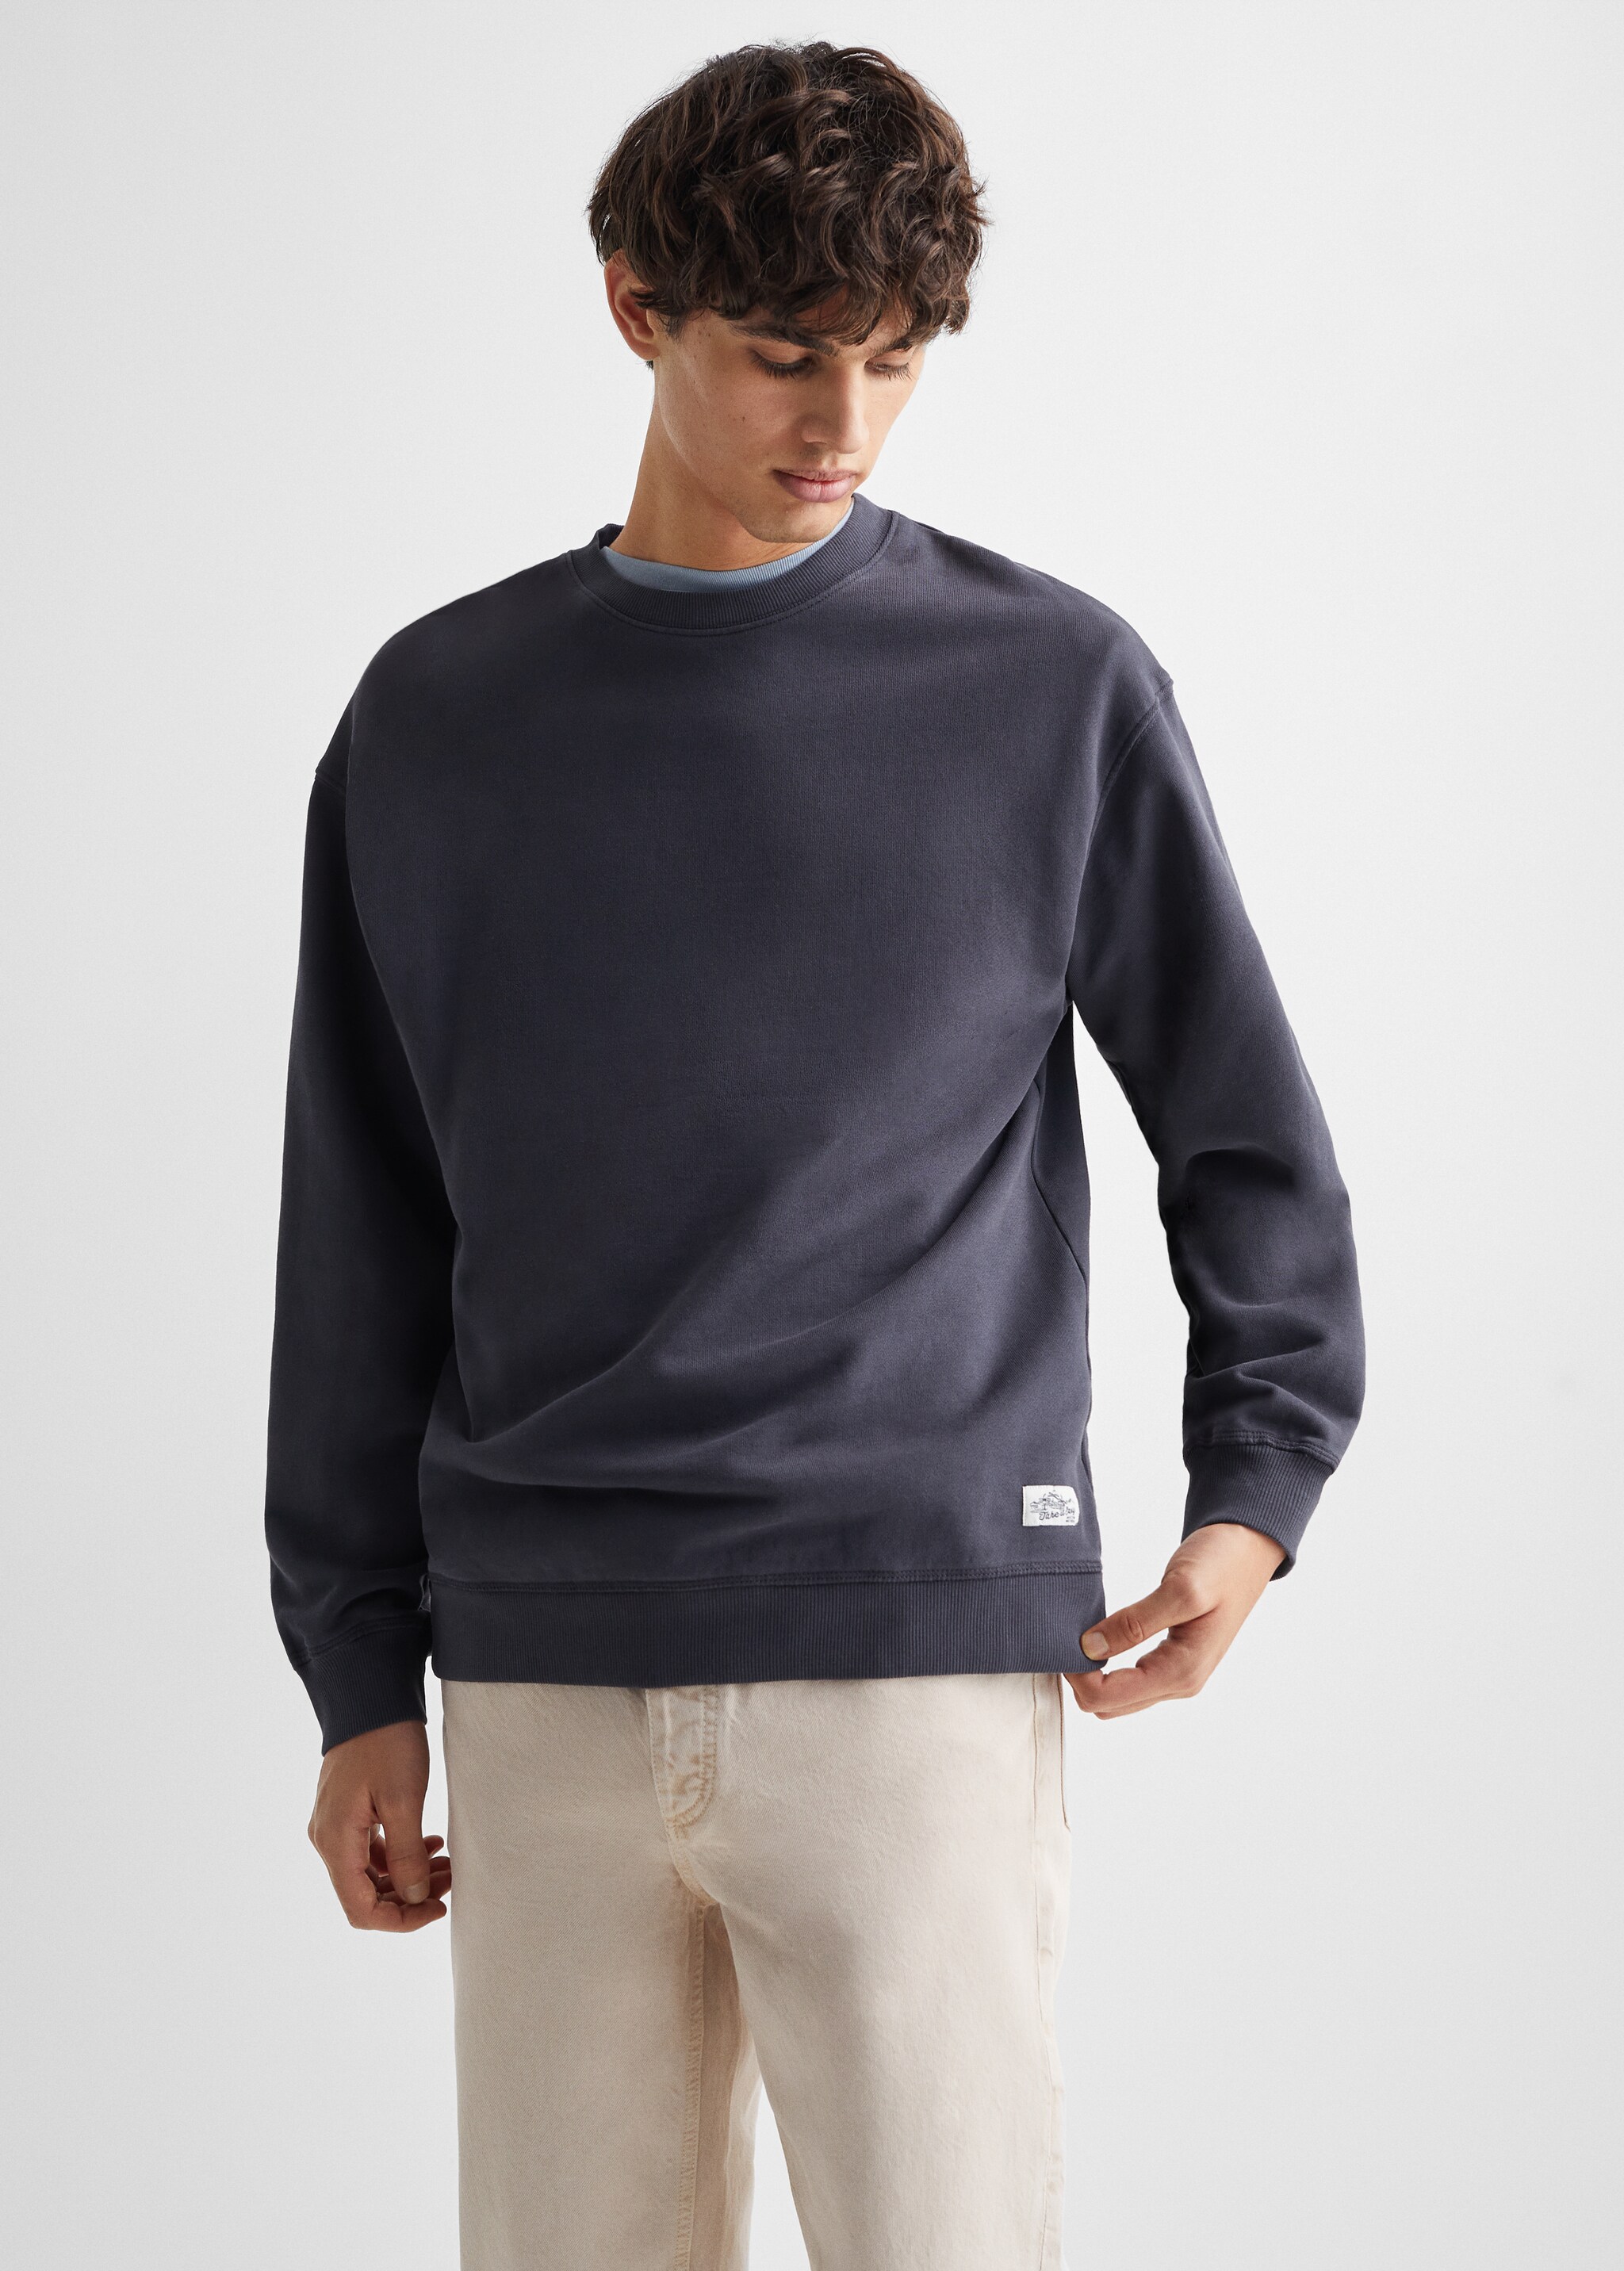 Sweater coton - Plan moyen